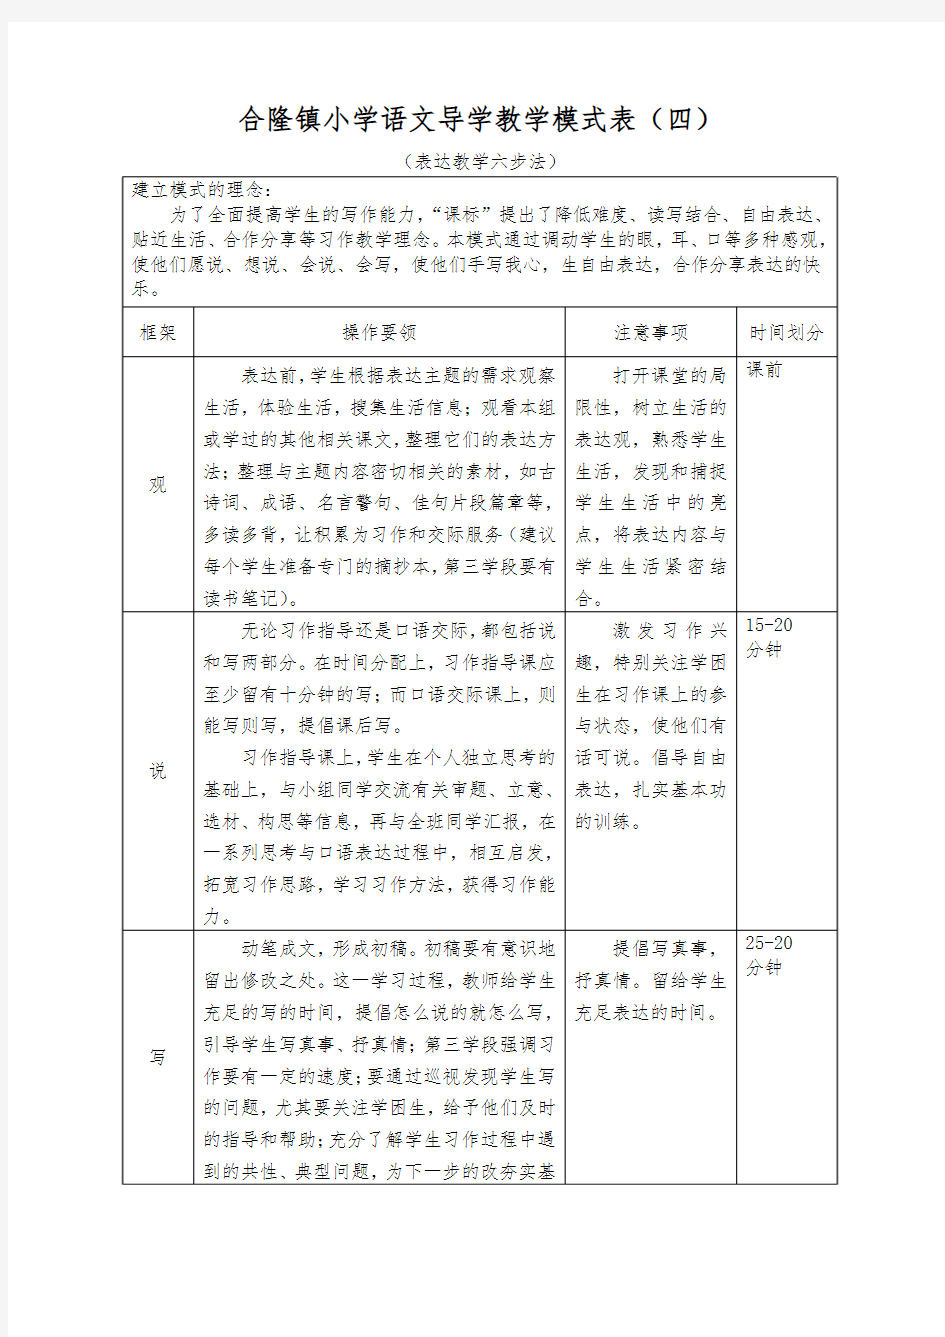 合隆镇小学语文导学教学模式表(表达教学六步法)